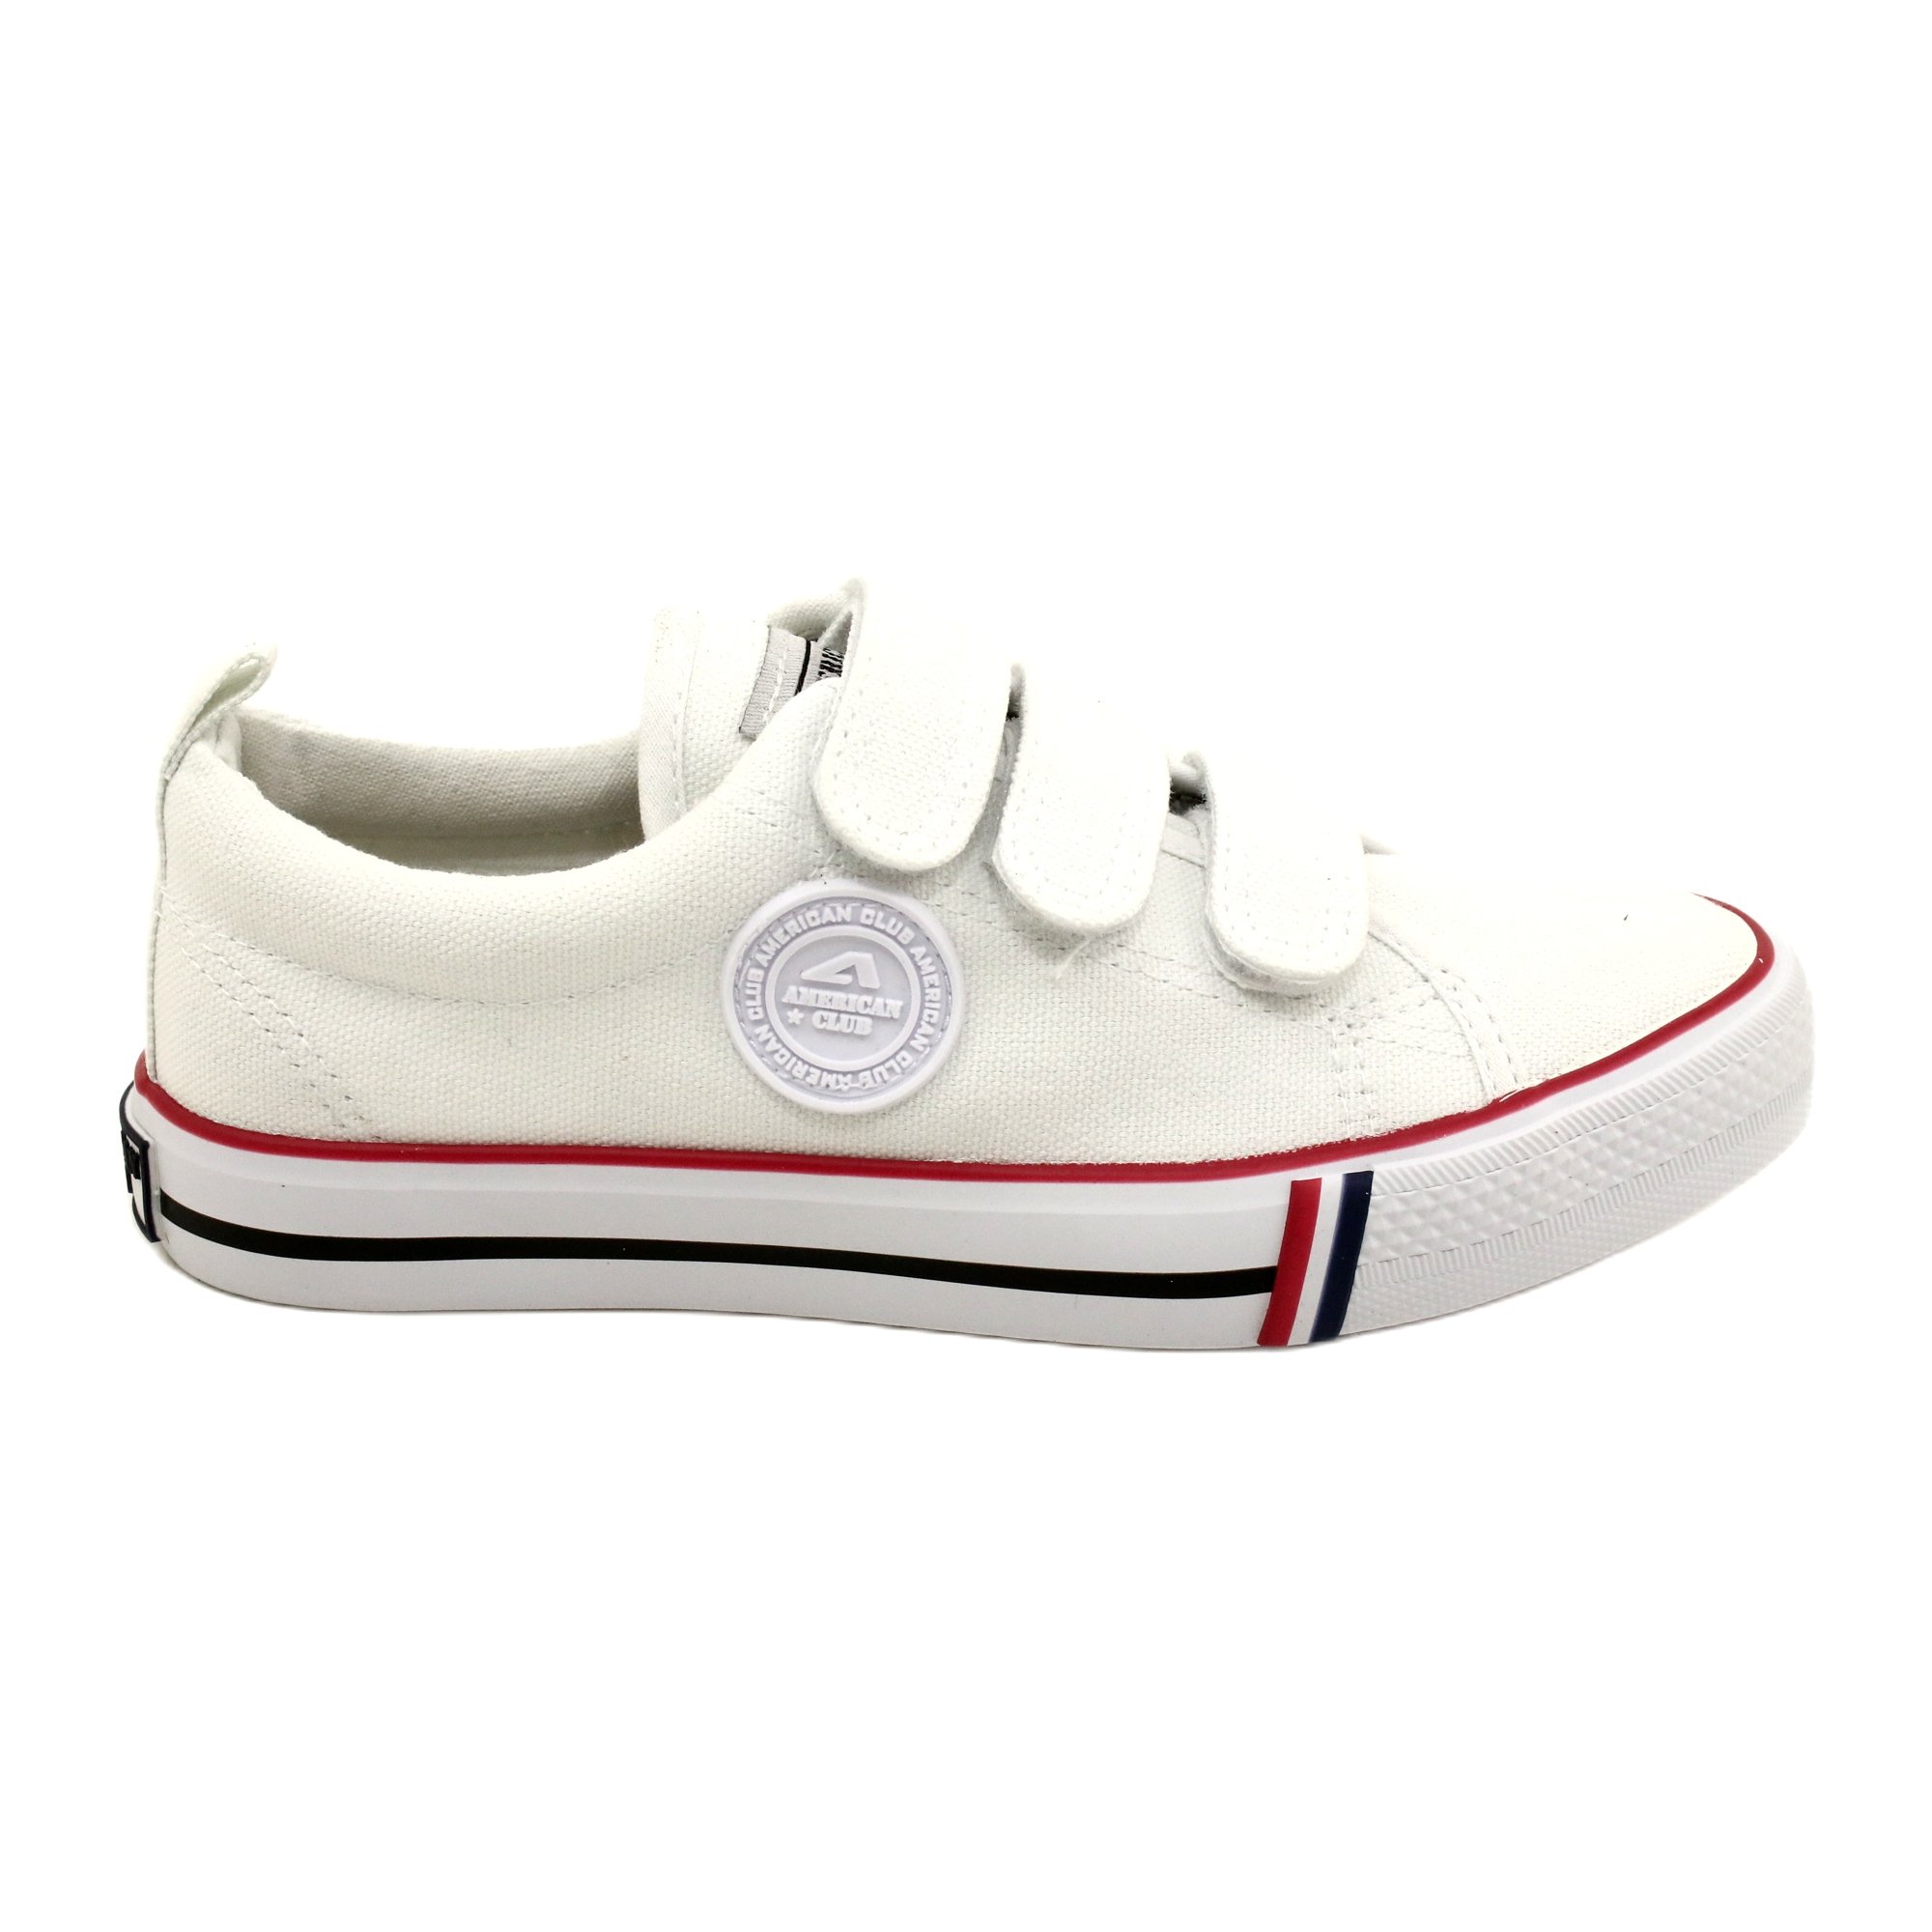 Trampki buty dziecięce na rzepy American Club LH63/21 White białe